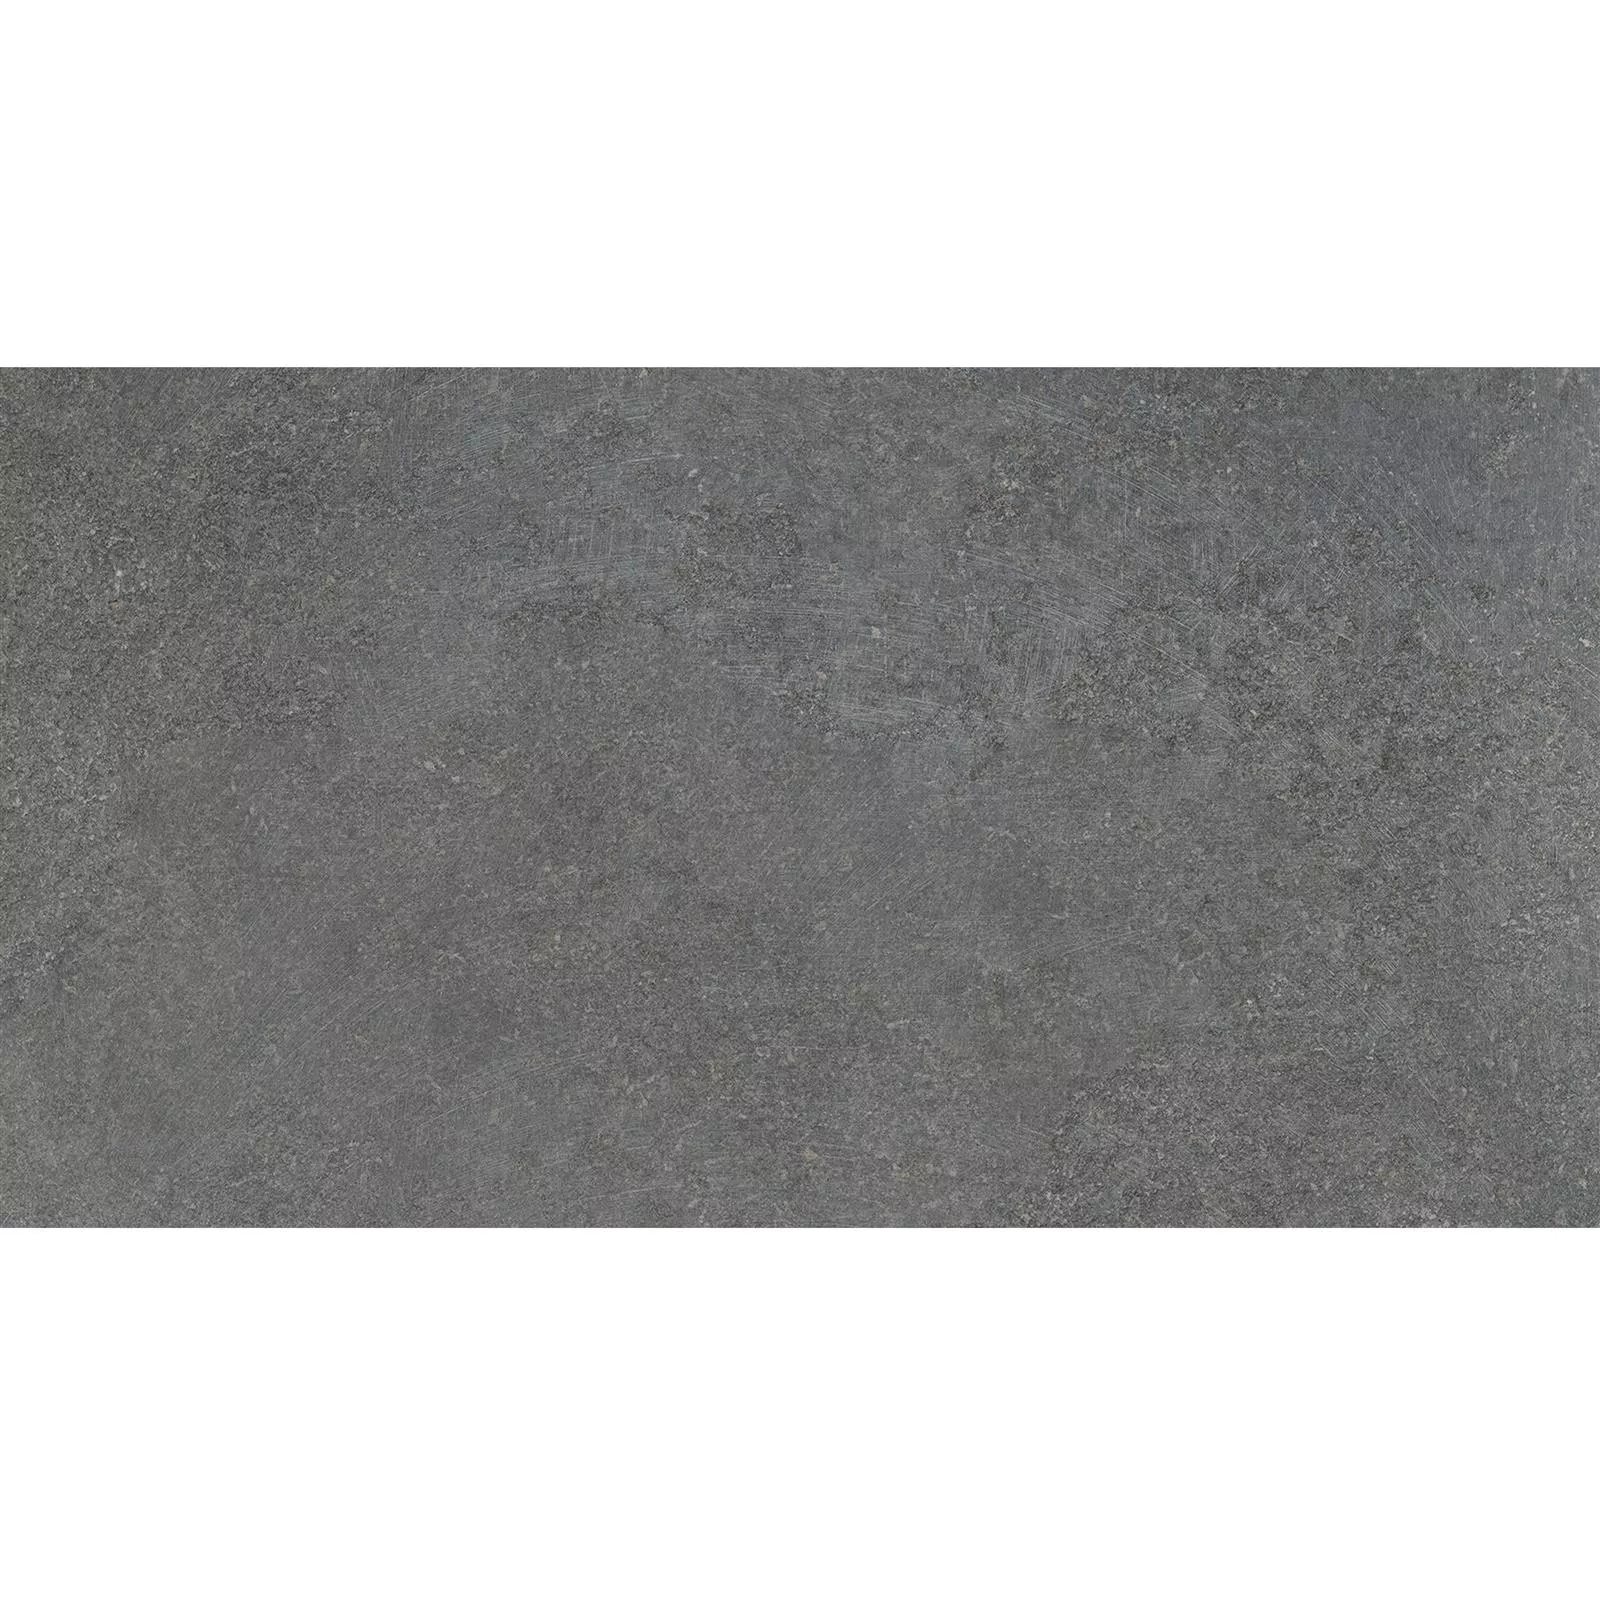 Πλακάκια Δαπέδου Πέτρινη Όψη Horizon Ανθρακίτης 30x60cm